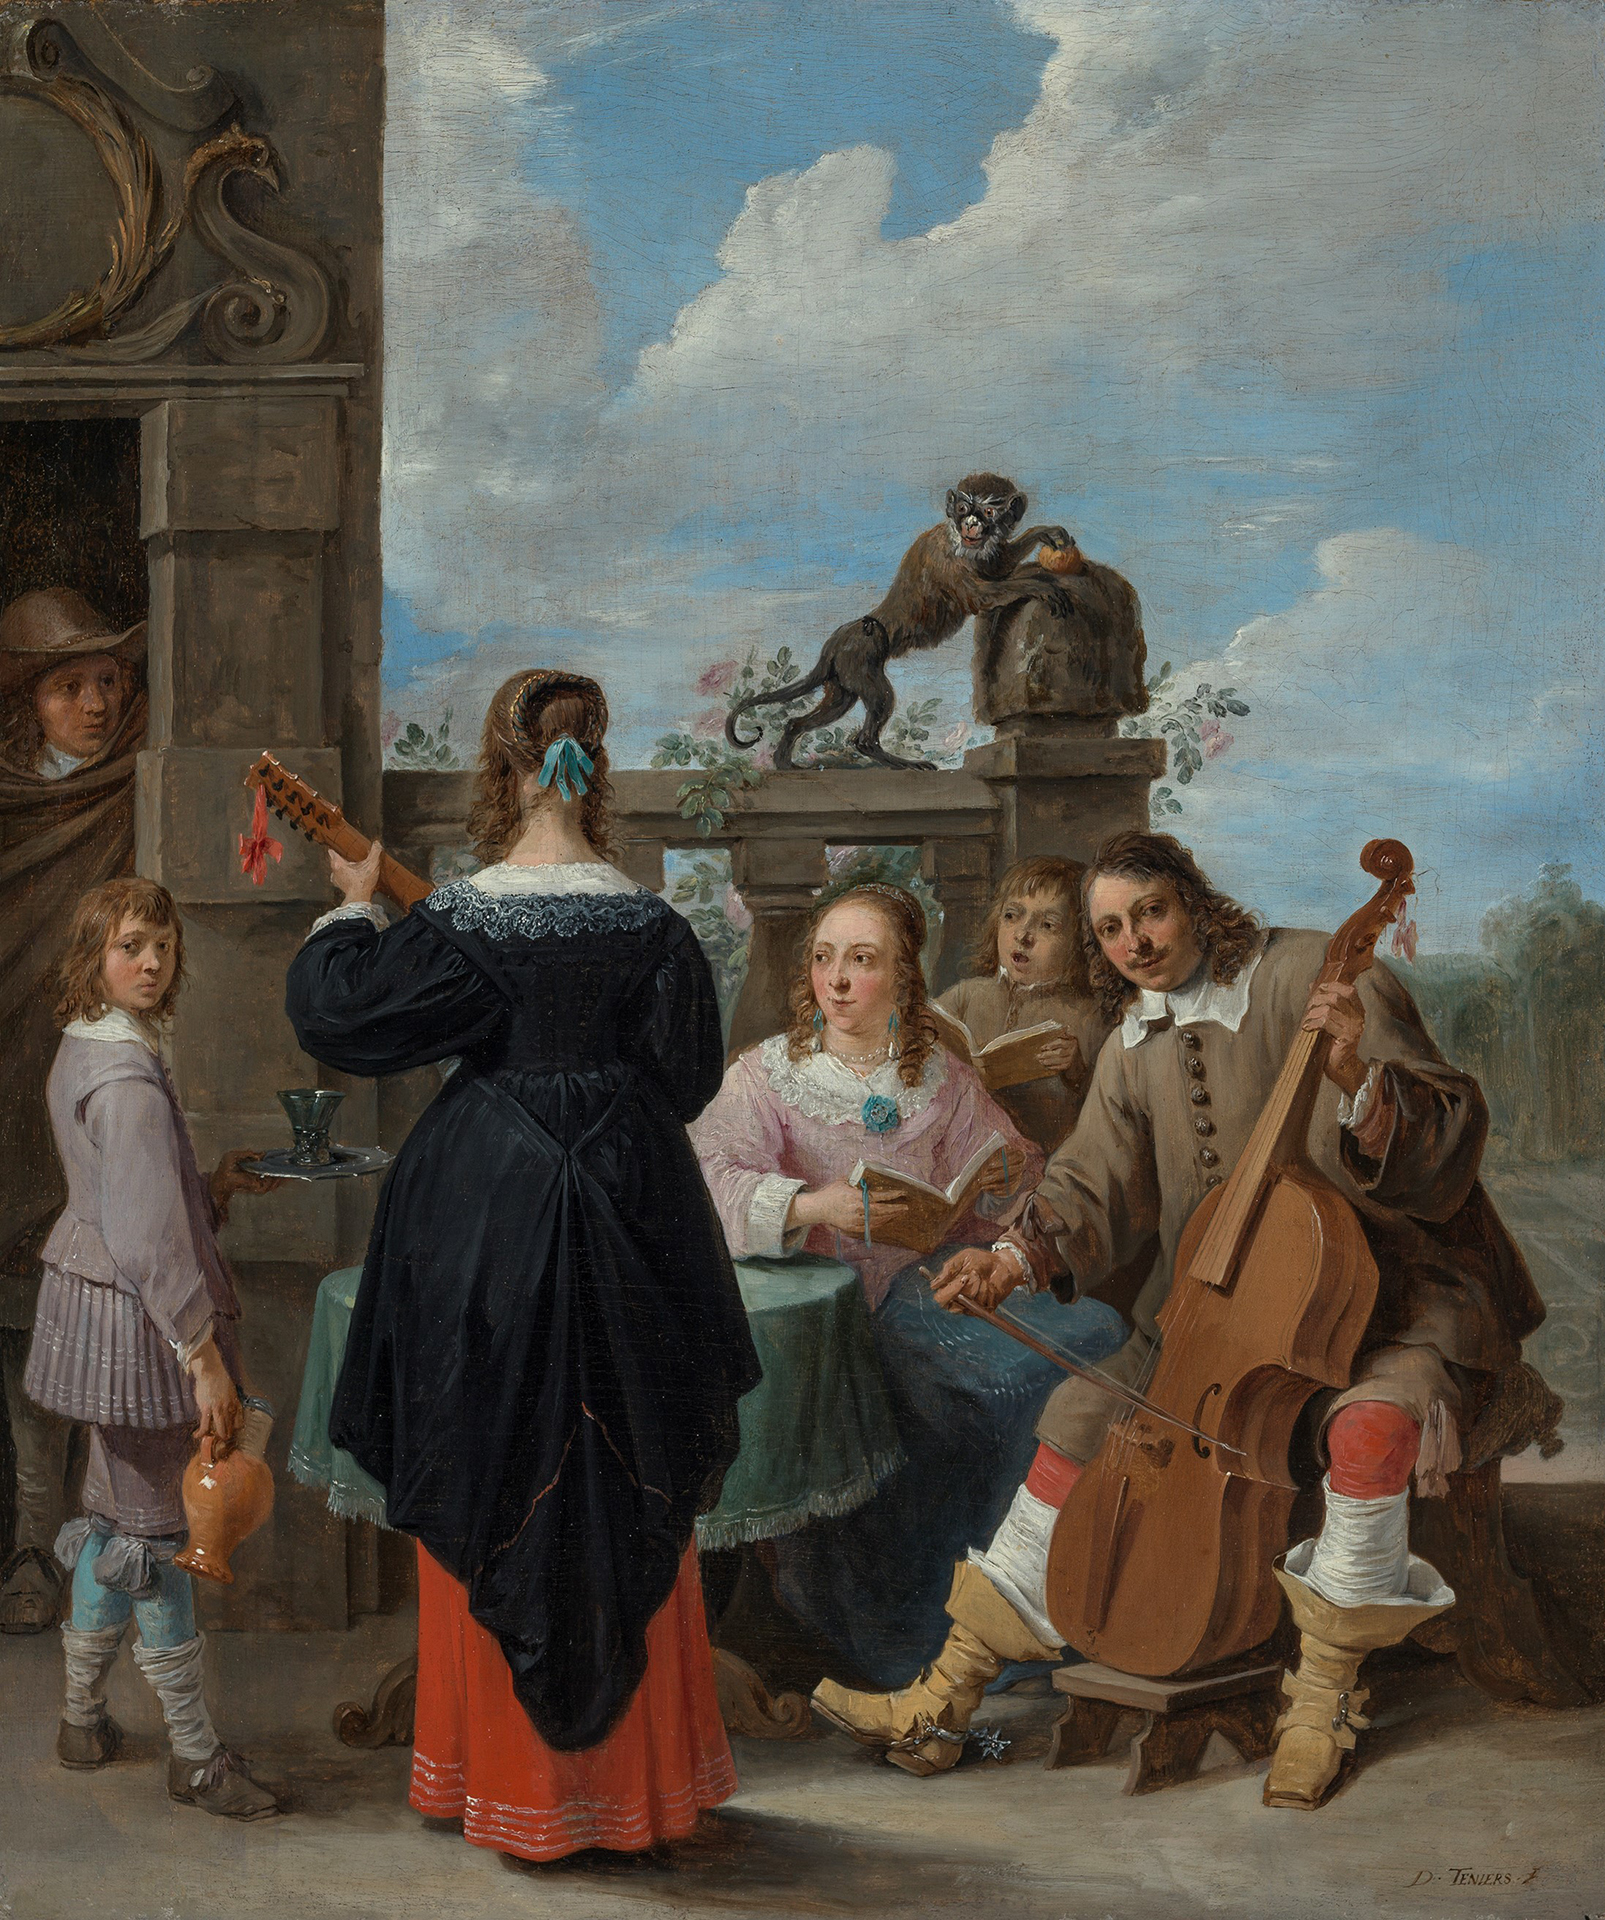 Gemälde von David Teniers auf dem eine Familie auf einer Terrasse abgebildet ist, die gerade musiziert.